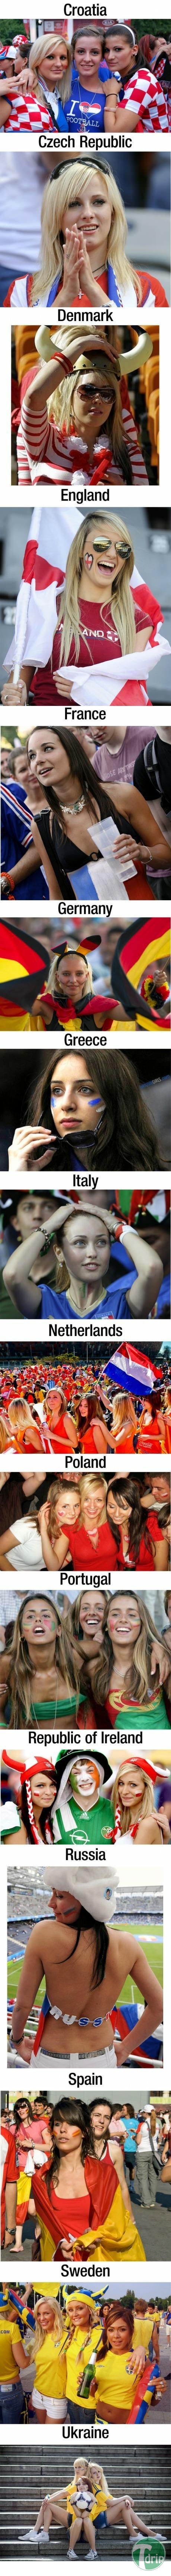 1 (5).jpg : 유럽 각국의 응원녀들.jpg